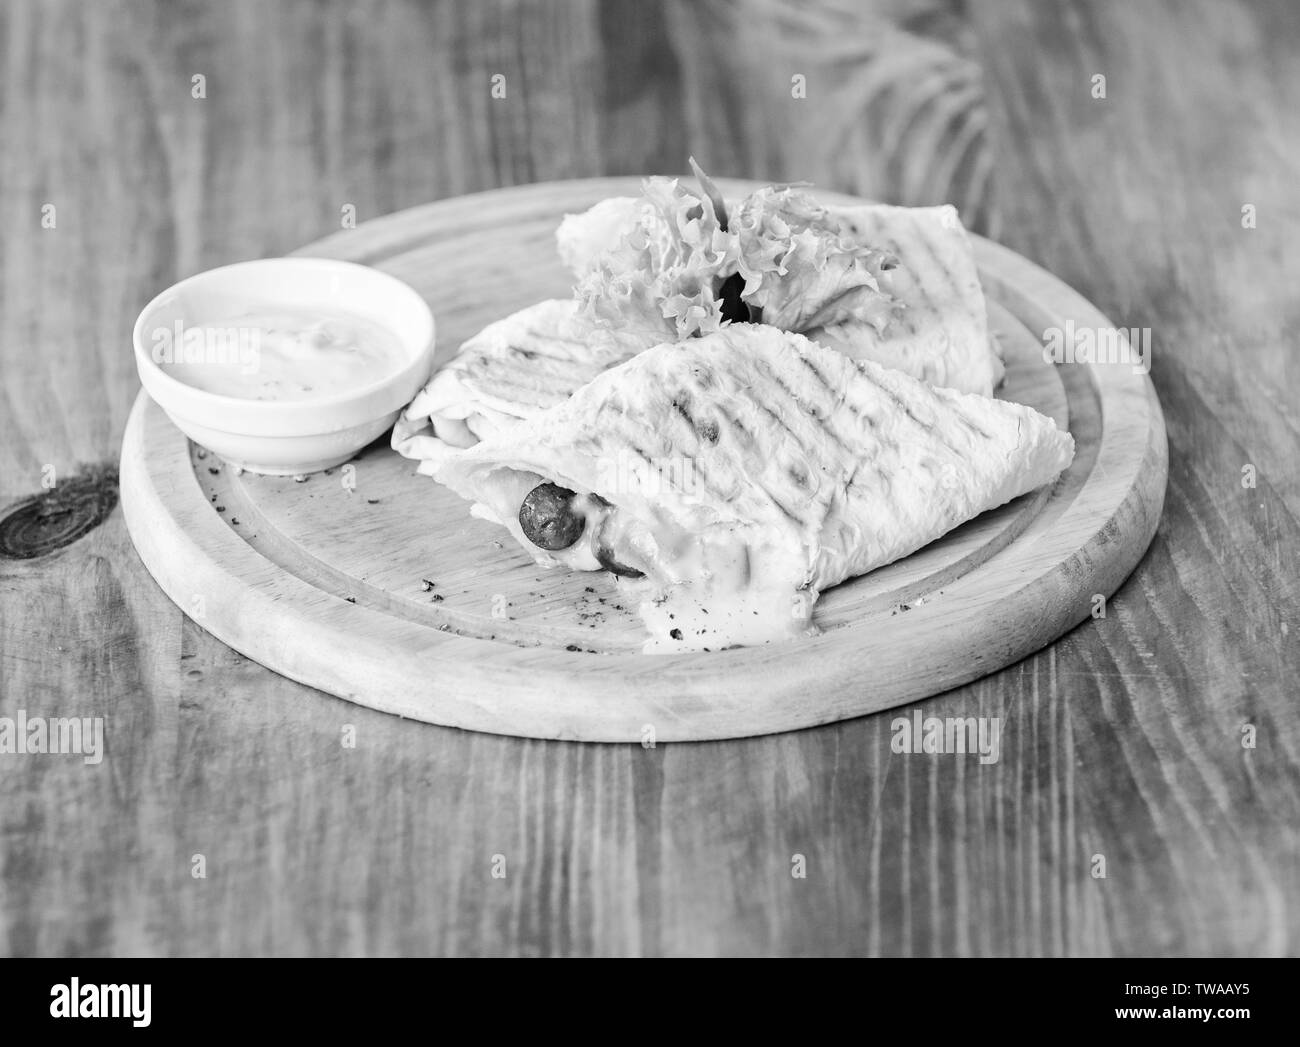 Essen im Restaurant traditionelle Küche. Burrito tortilla serviert Holzbrett. Das Essen im Restaurant Konzept. Lavash burrito gefüllt Fleisch Wurst und Käse sauce Salat serviert. Fleisch umhüllt mit lavash Burrito. Stockfoto